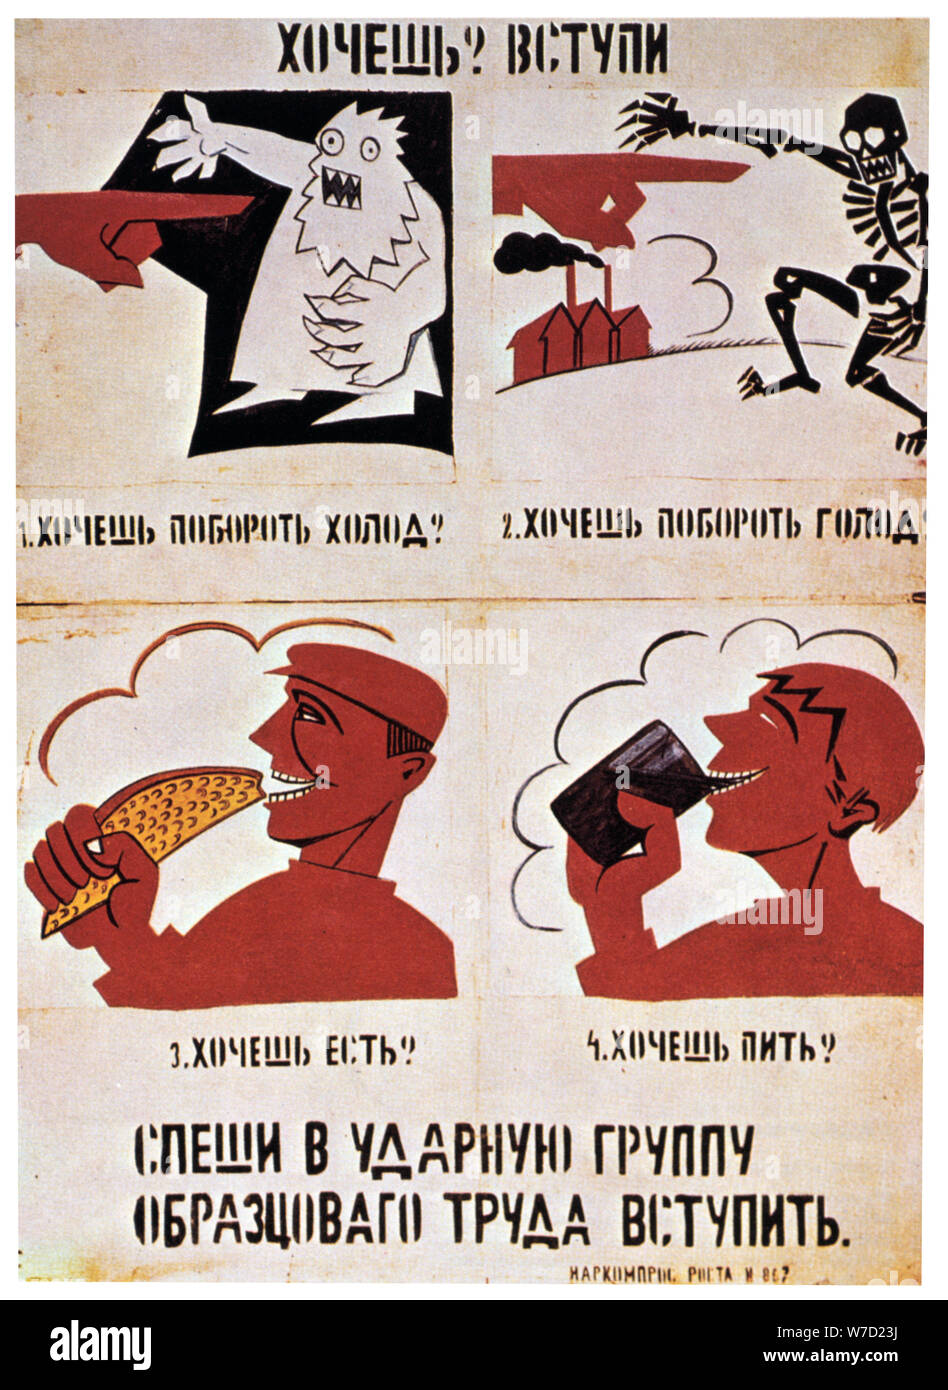 "Unirse a las fuerzas de color rojo para obtener una mejor calidad de vida", 1921. Artista: Vladimir Mayakovsky Foto de stock